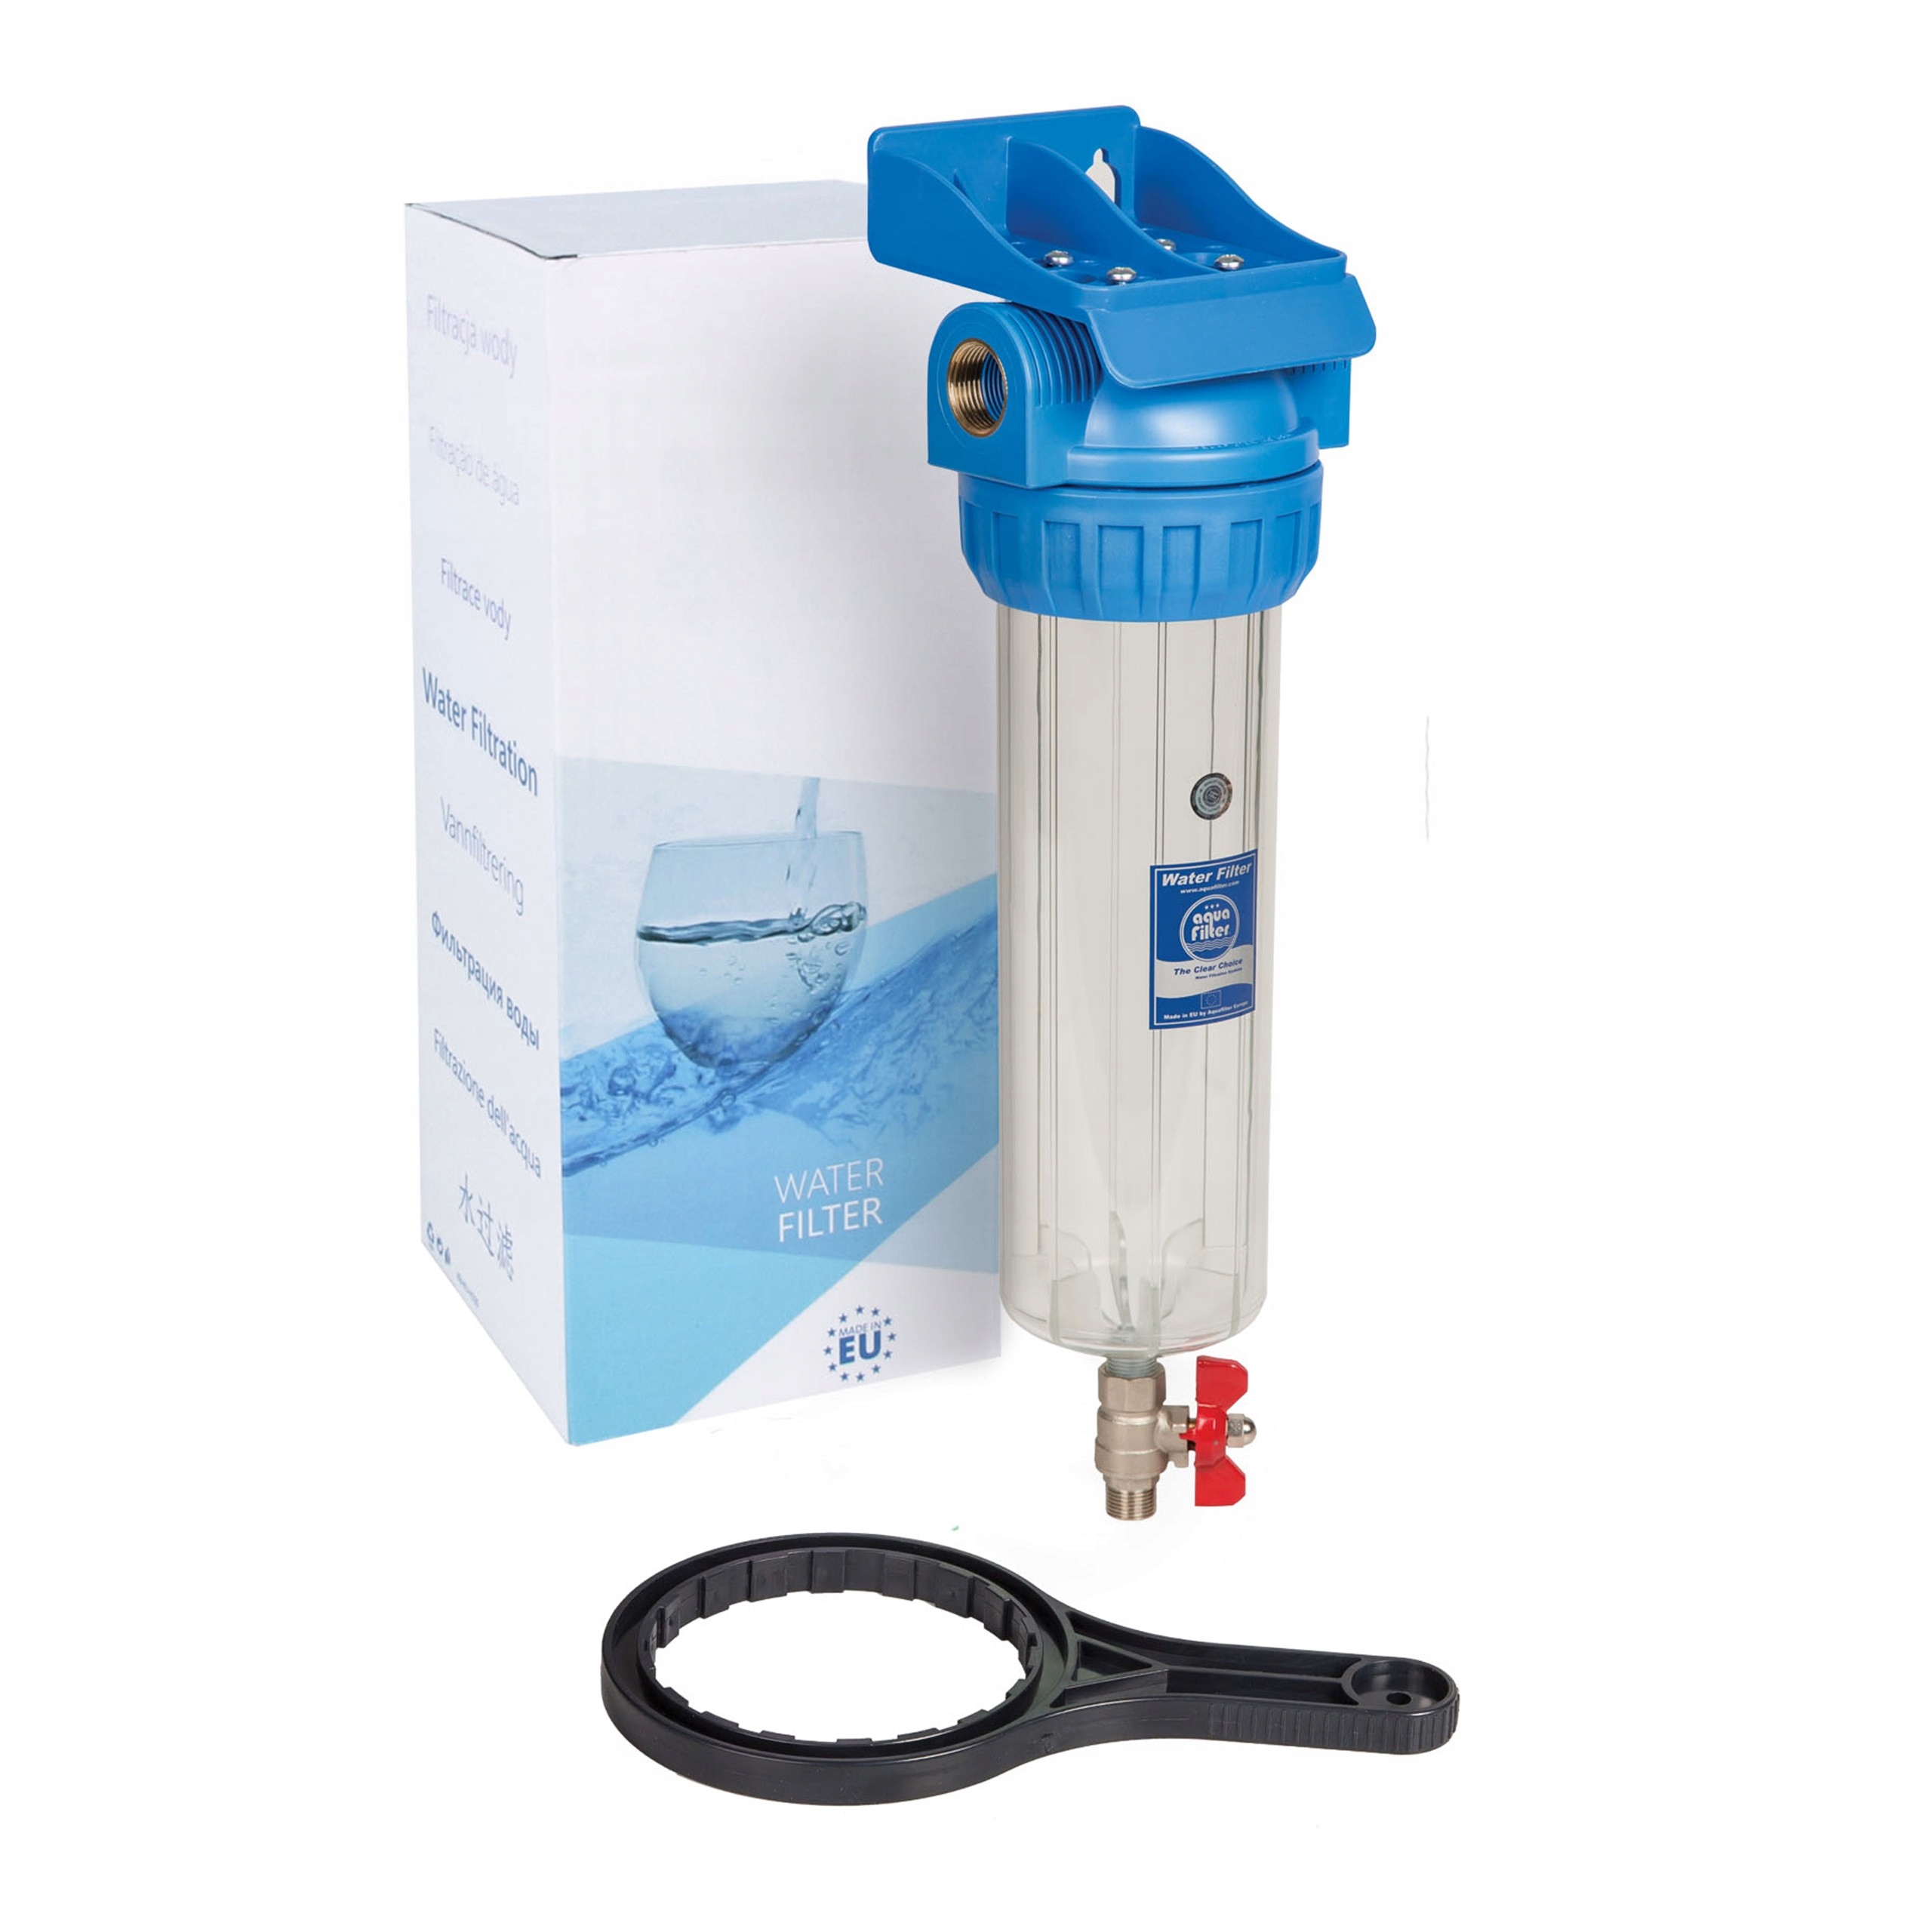 Фильтр для воды аурус отзывы. Фильтр Aquafilter fhpr1-hp1. Фильтр магистральный Aquafilter h10g-fhpr34-3vr. Колба sl10 1/2 Аквафор. Корпус фильтра Aquafilter fhpr12-3v_r.